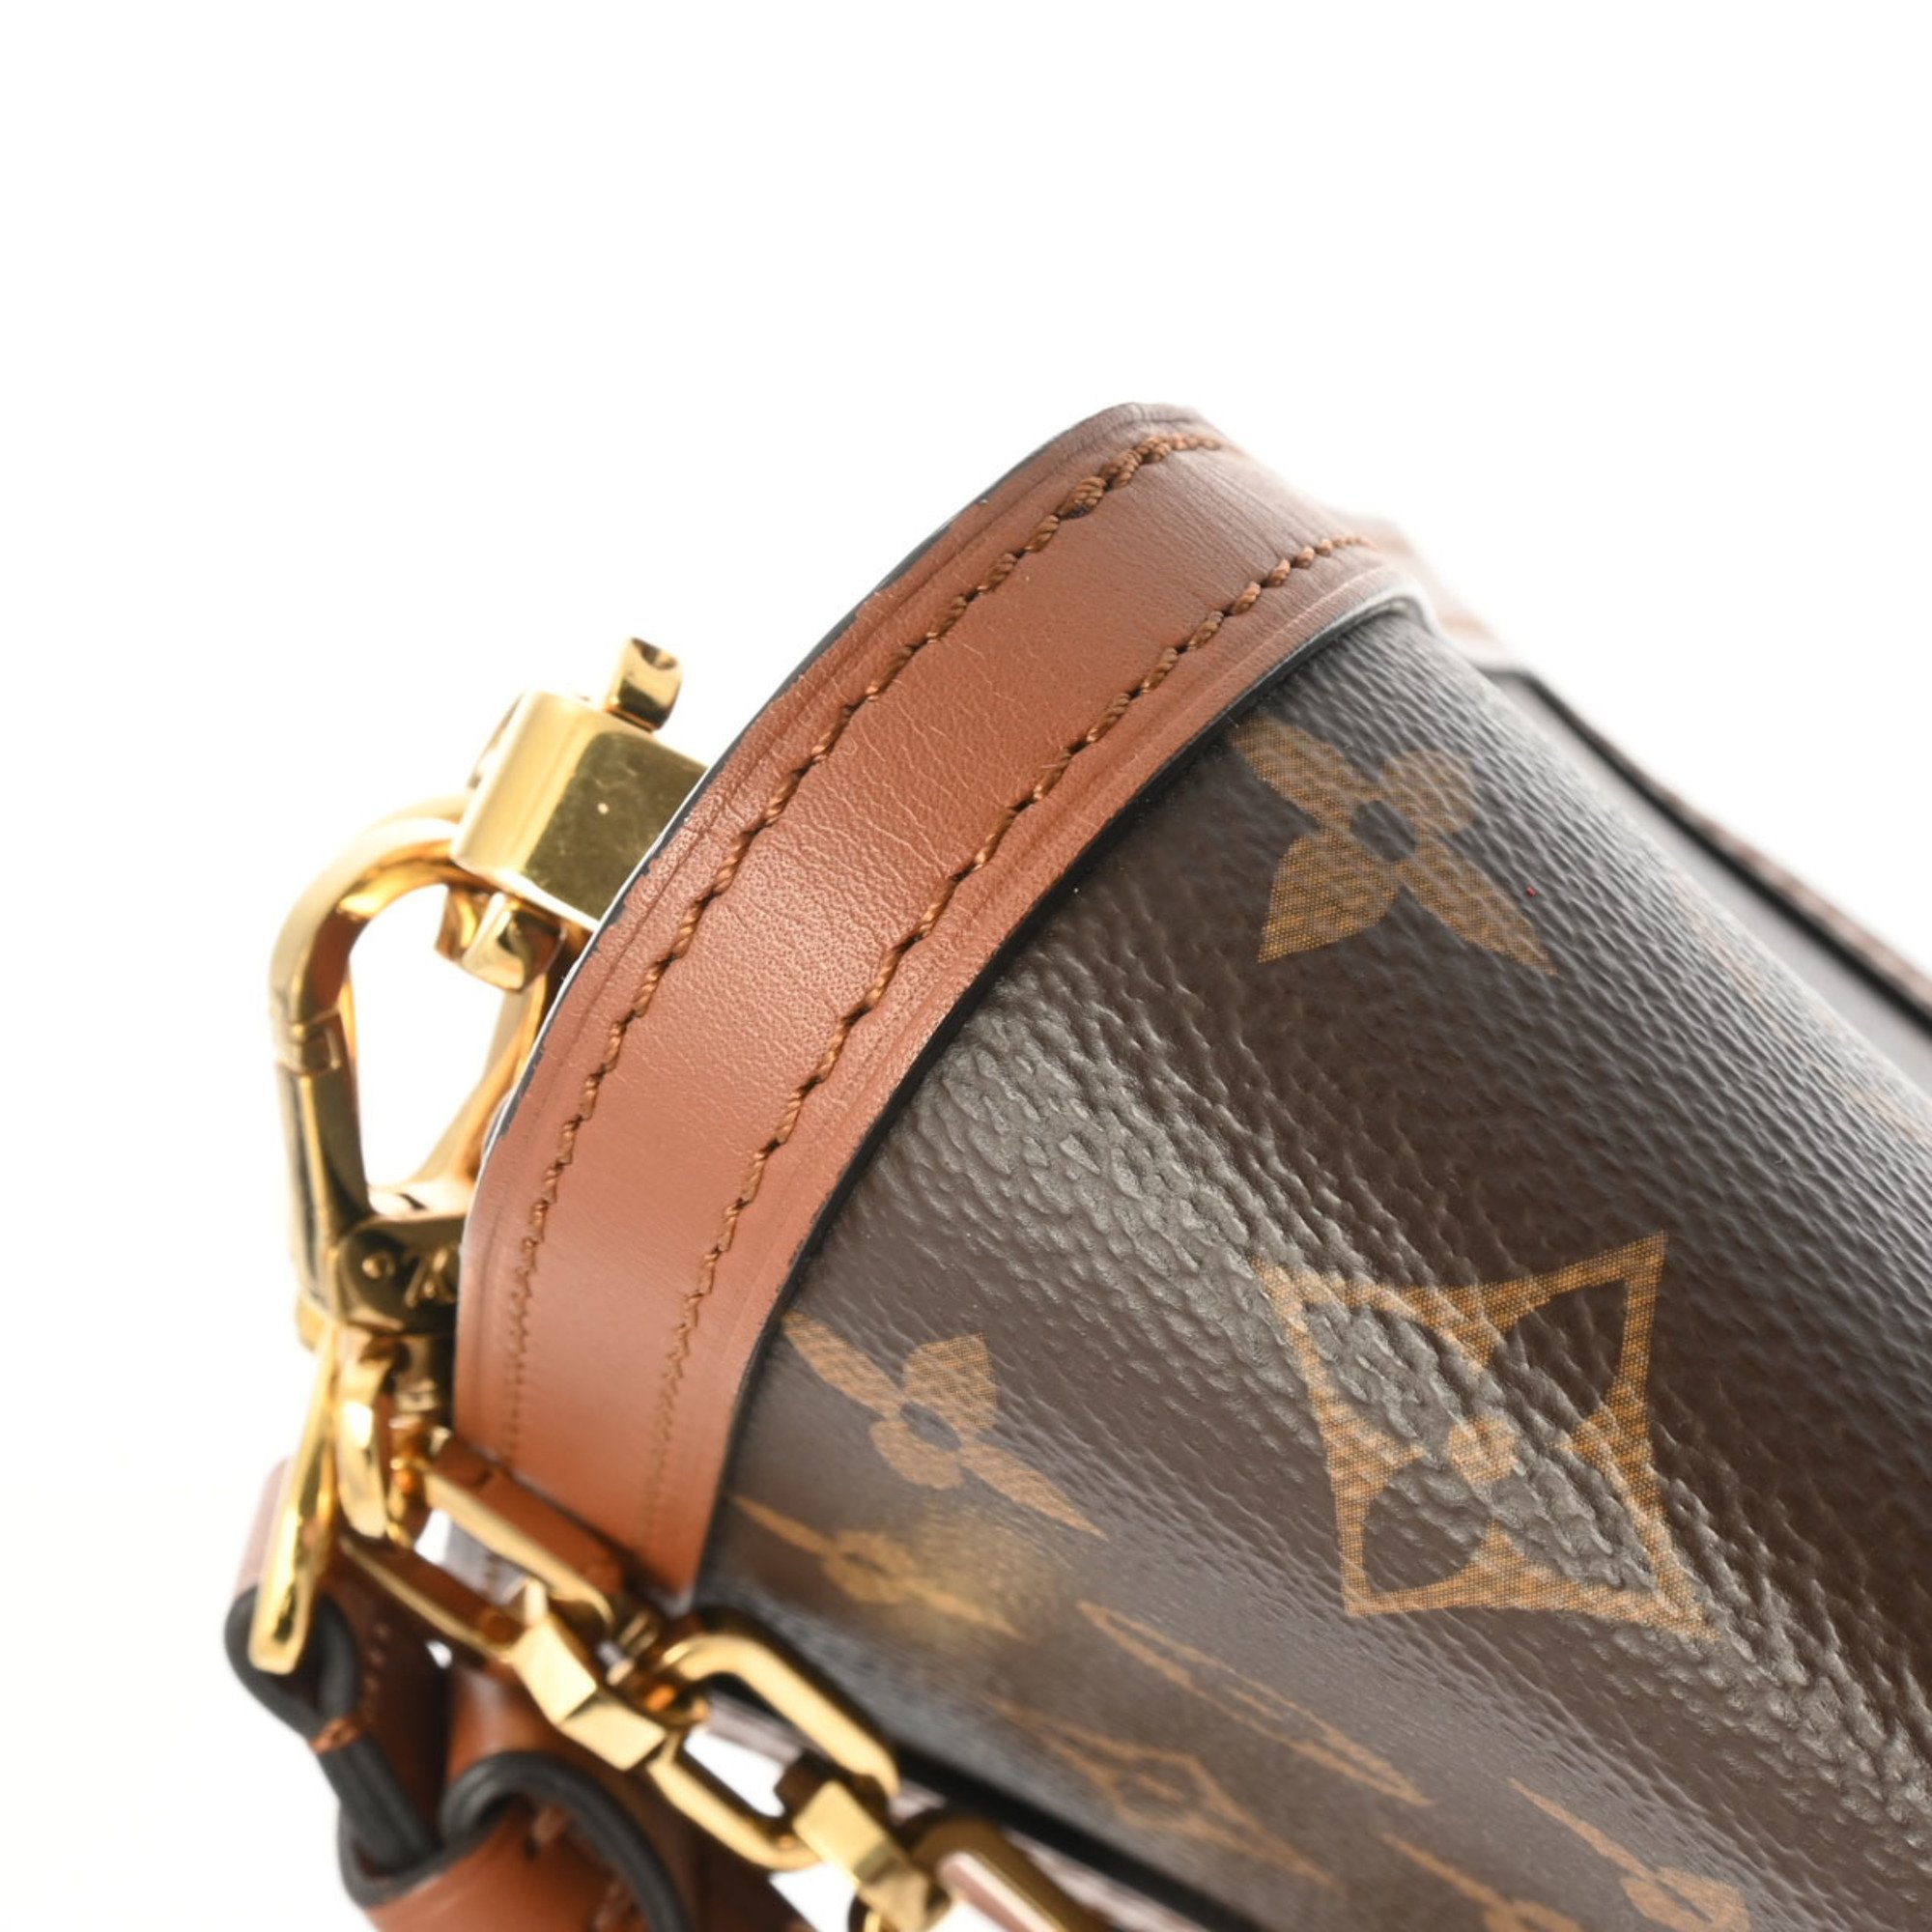 LOUIS VUITTON Louis Vuitton Monogram Reverse Dauphine MM Brown M45958 Women's Canvas Shoulder Bag